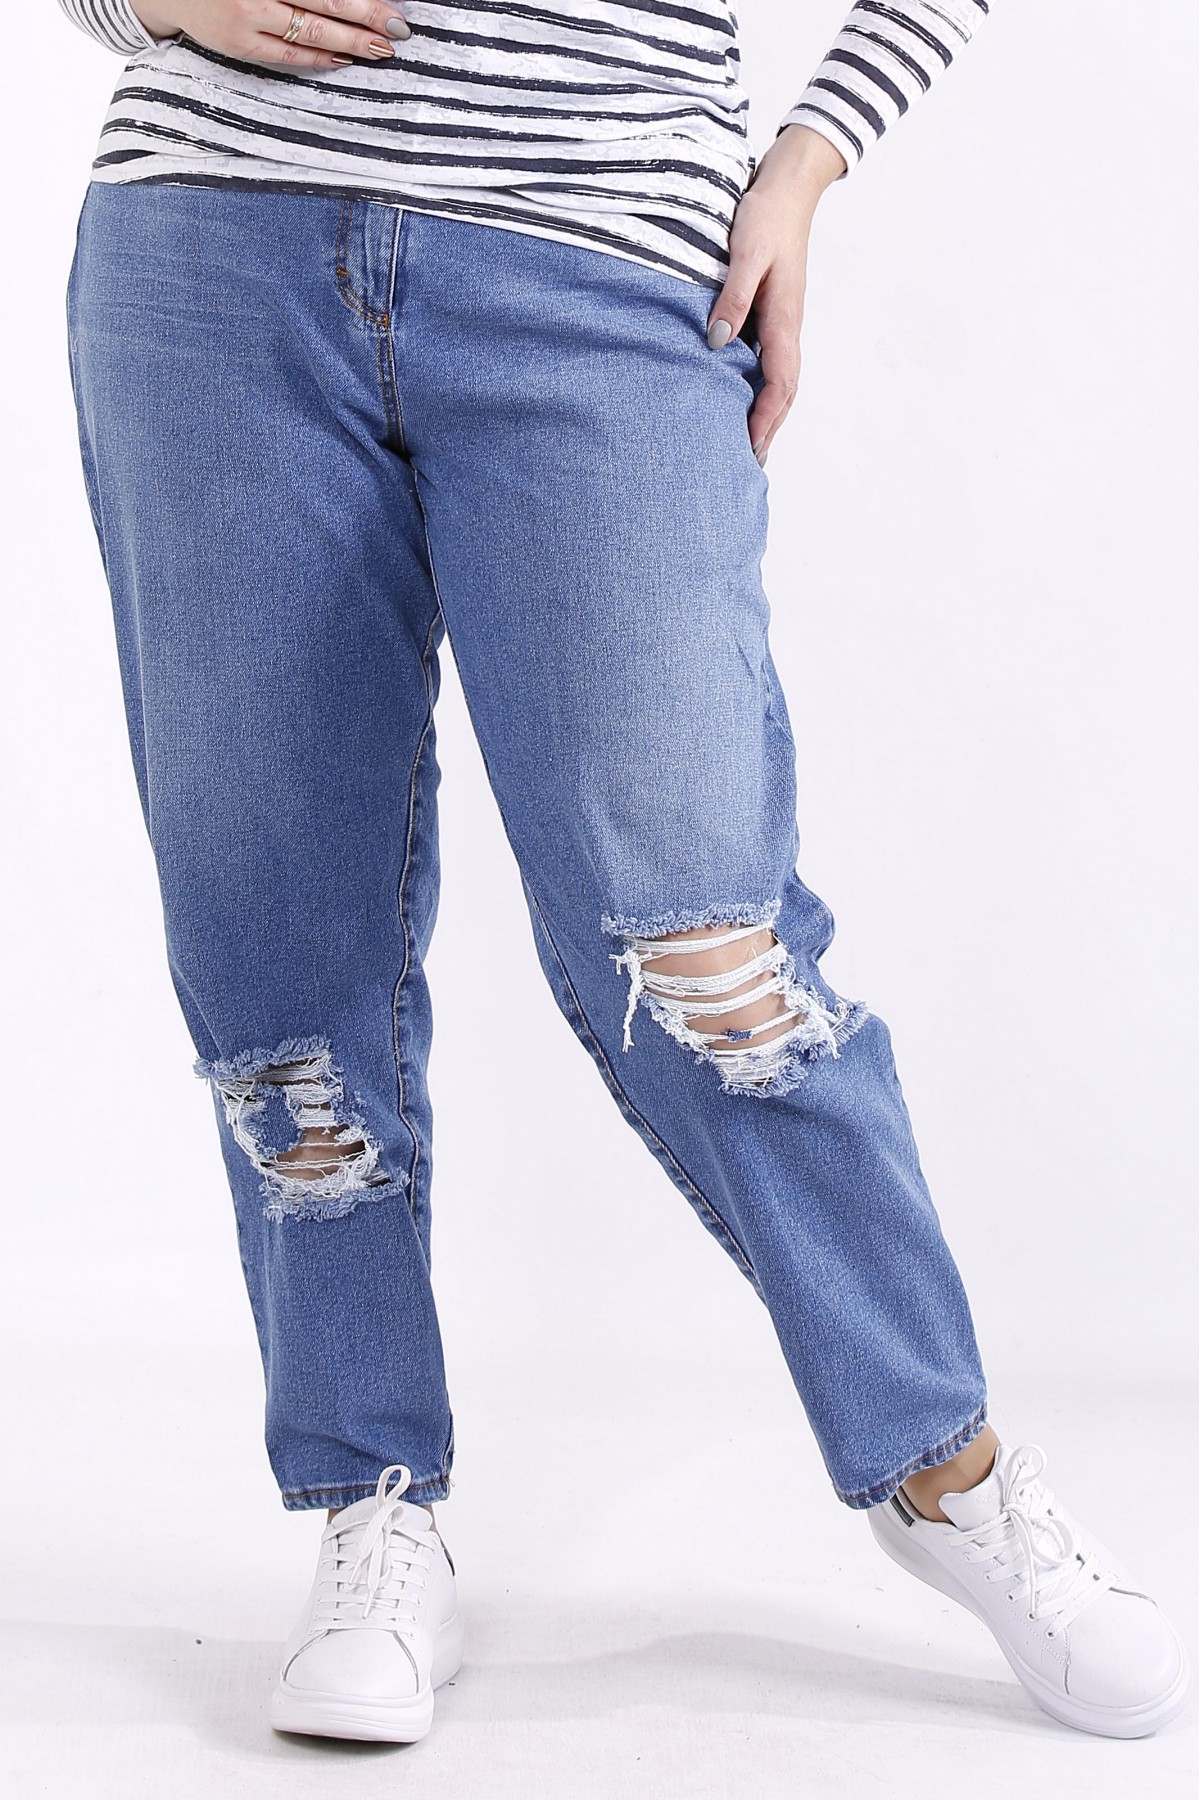 Голубые модные джинсы до 74 размера, рваные на коленях